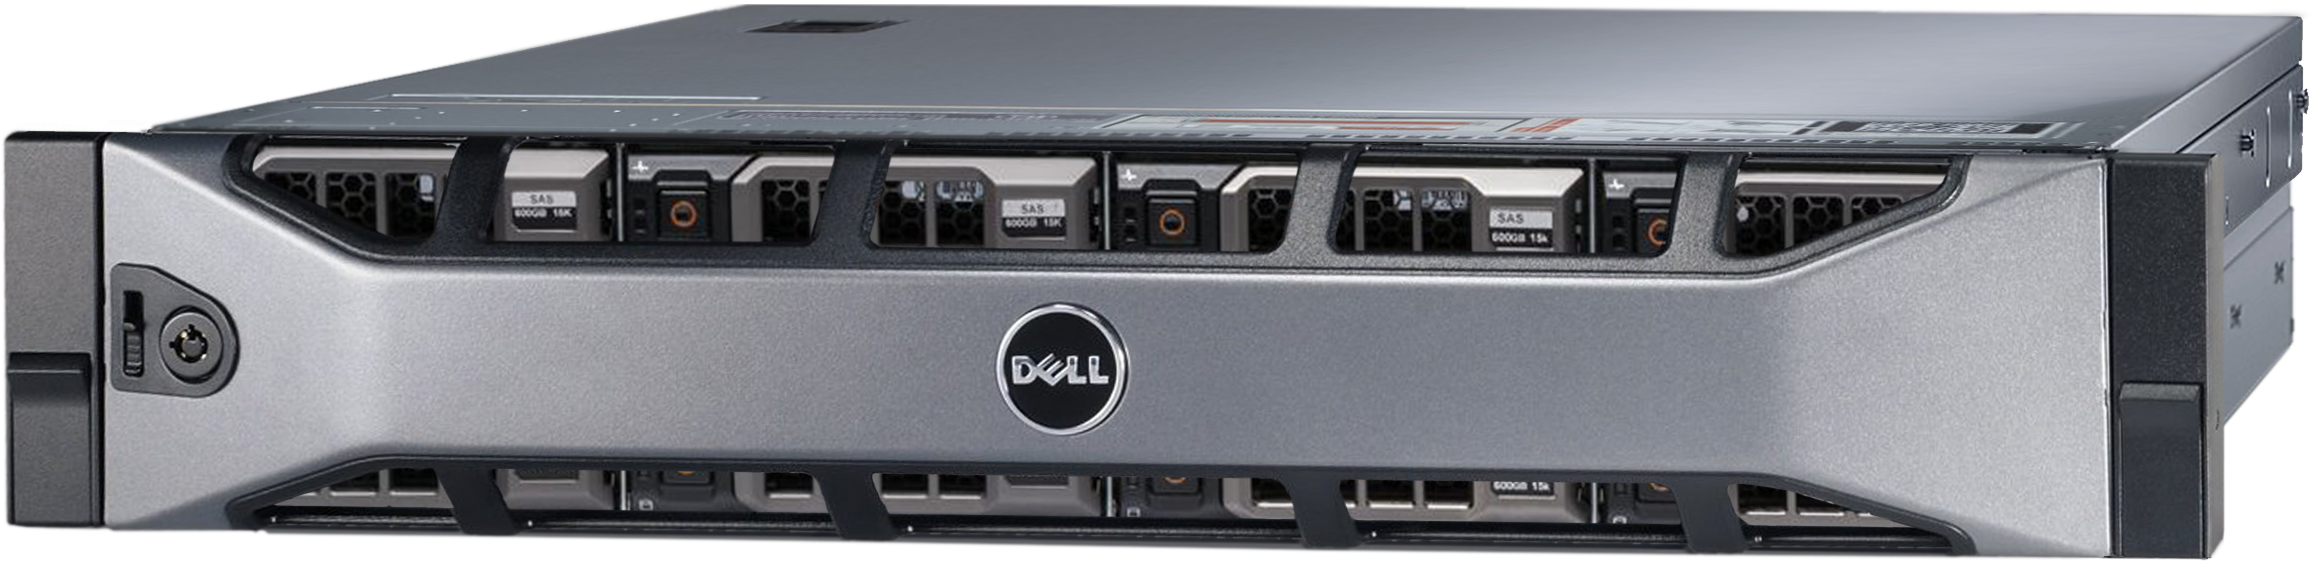 Аренда физического сервера DELL R720xd / 2 × E5-2620 v2 / 32 GB RAM / 2 x 240 GB SSD / 12 x 8 TB HDD / H310